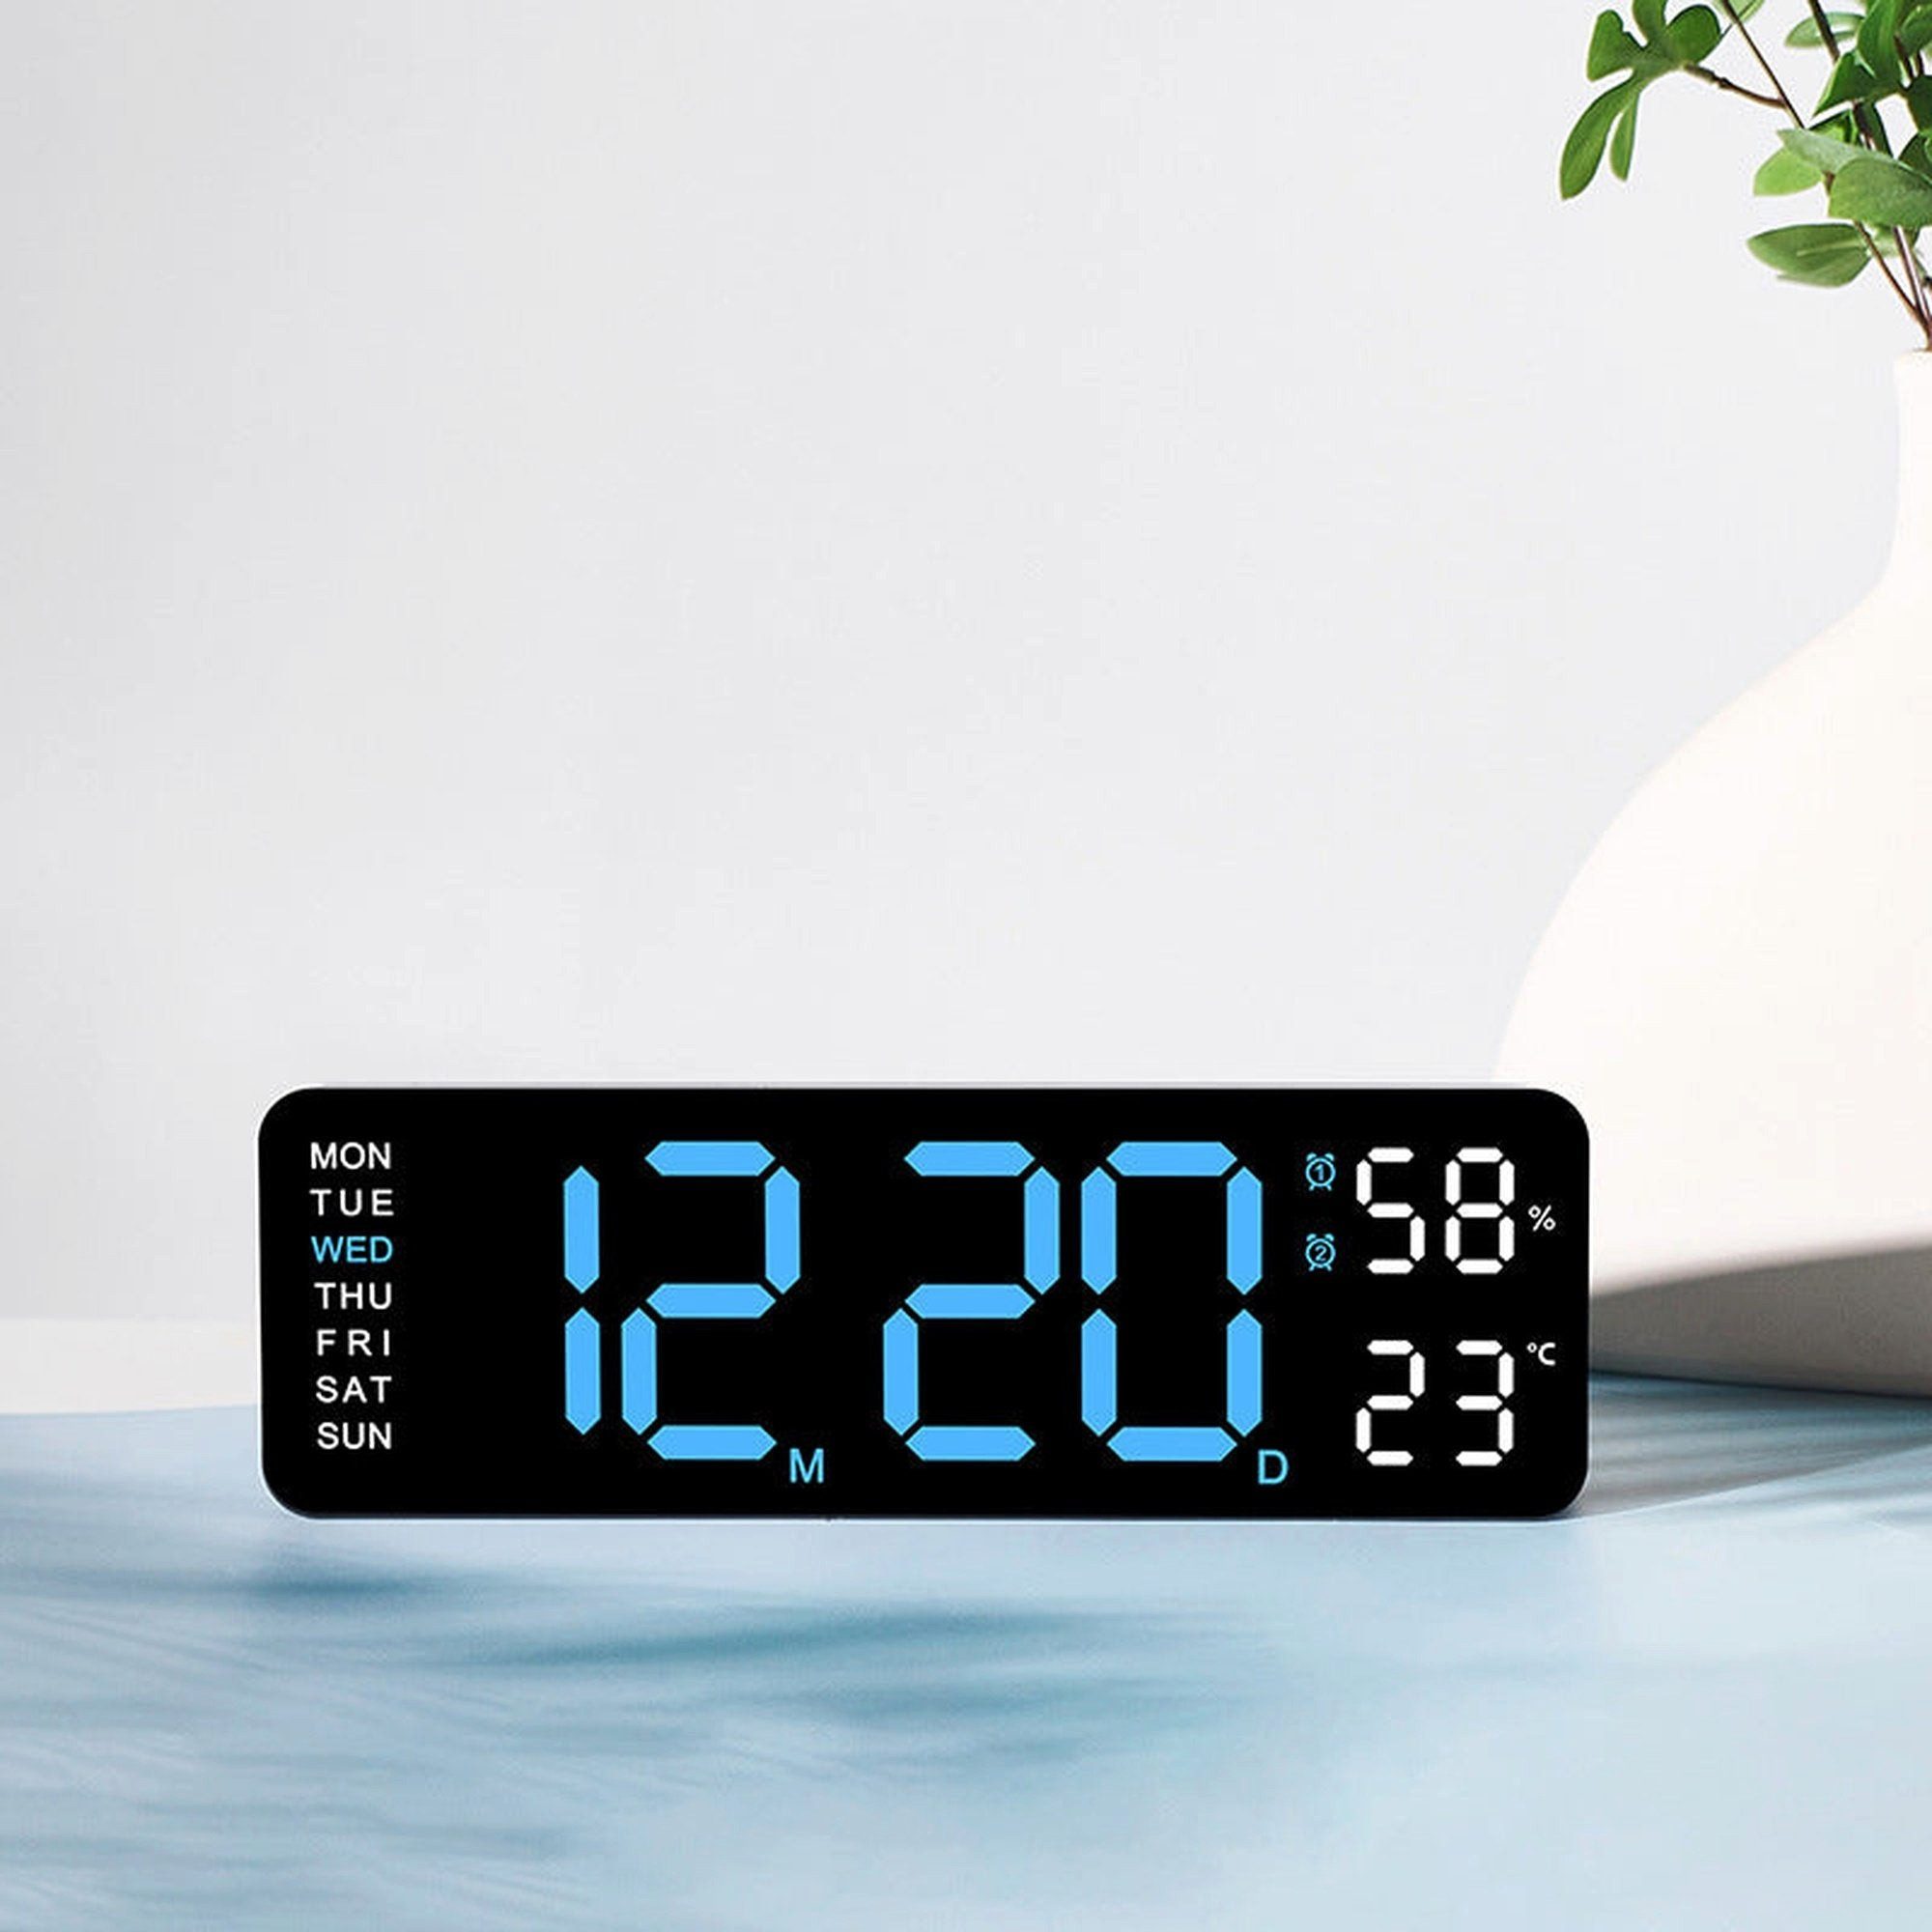 AUKUU Wecker Elektronische Elektronische Uhr einfache Multifunktionsuhr rechteckiger Wecker mit großer Schrift Hänge oder Standuhr